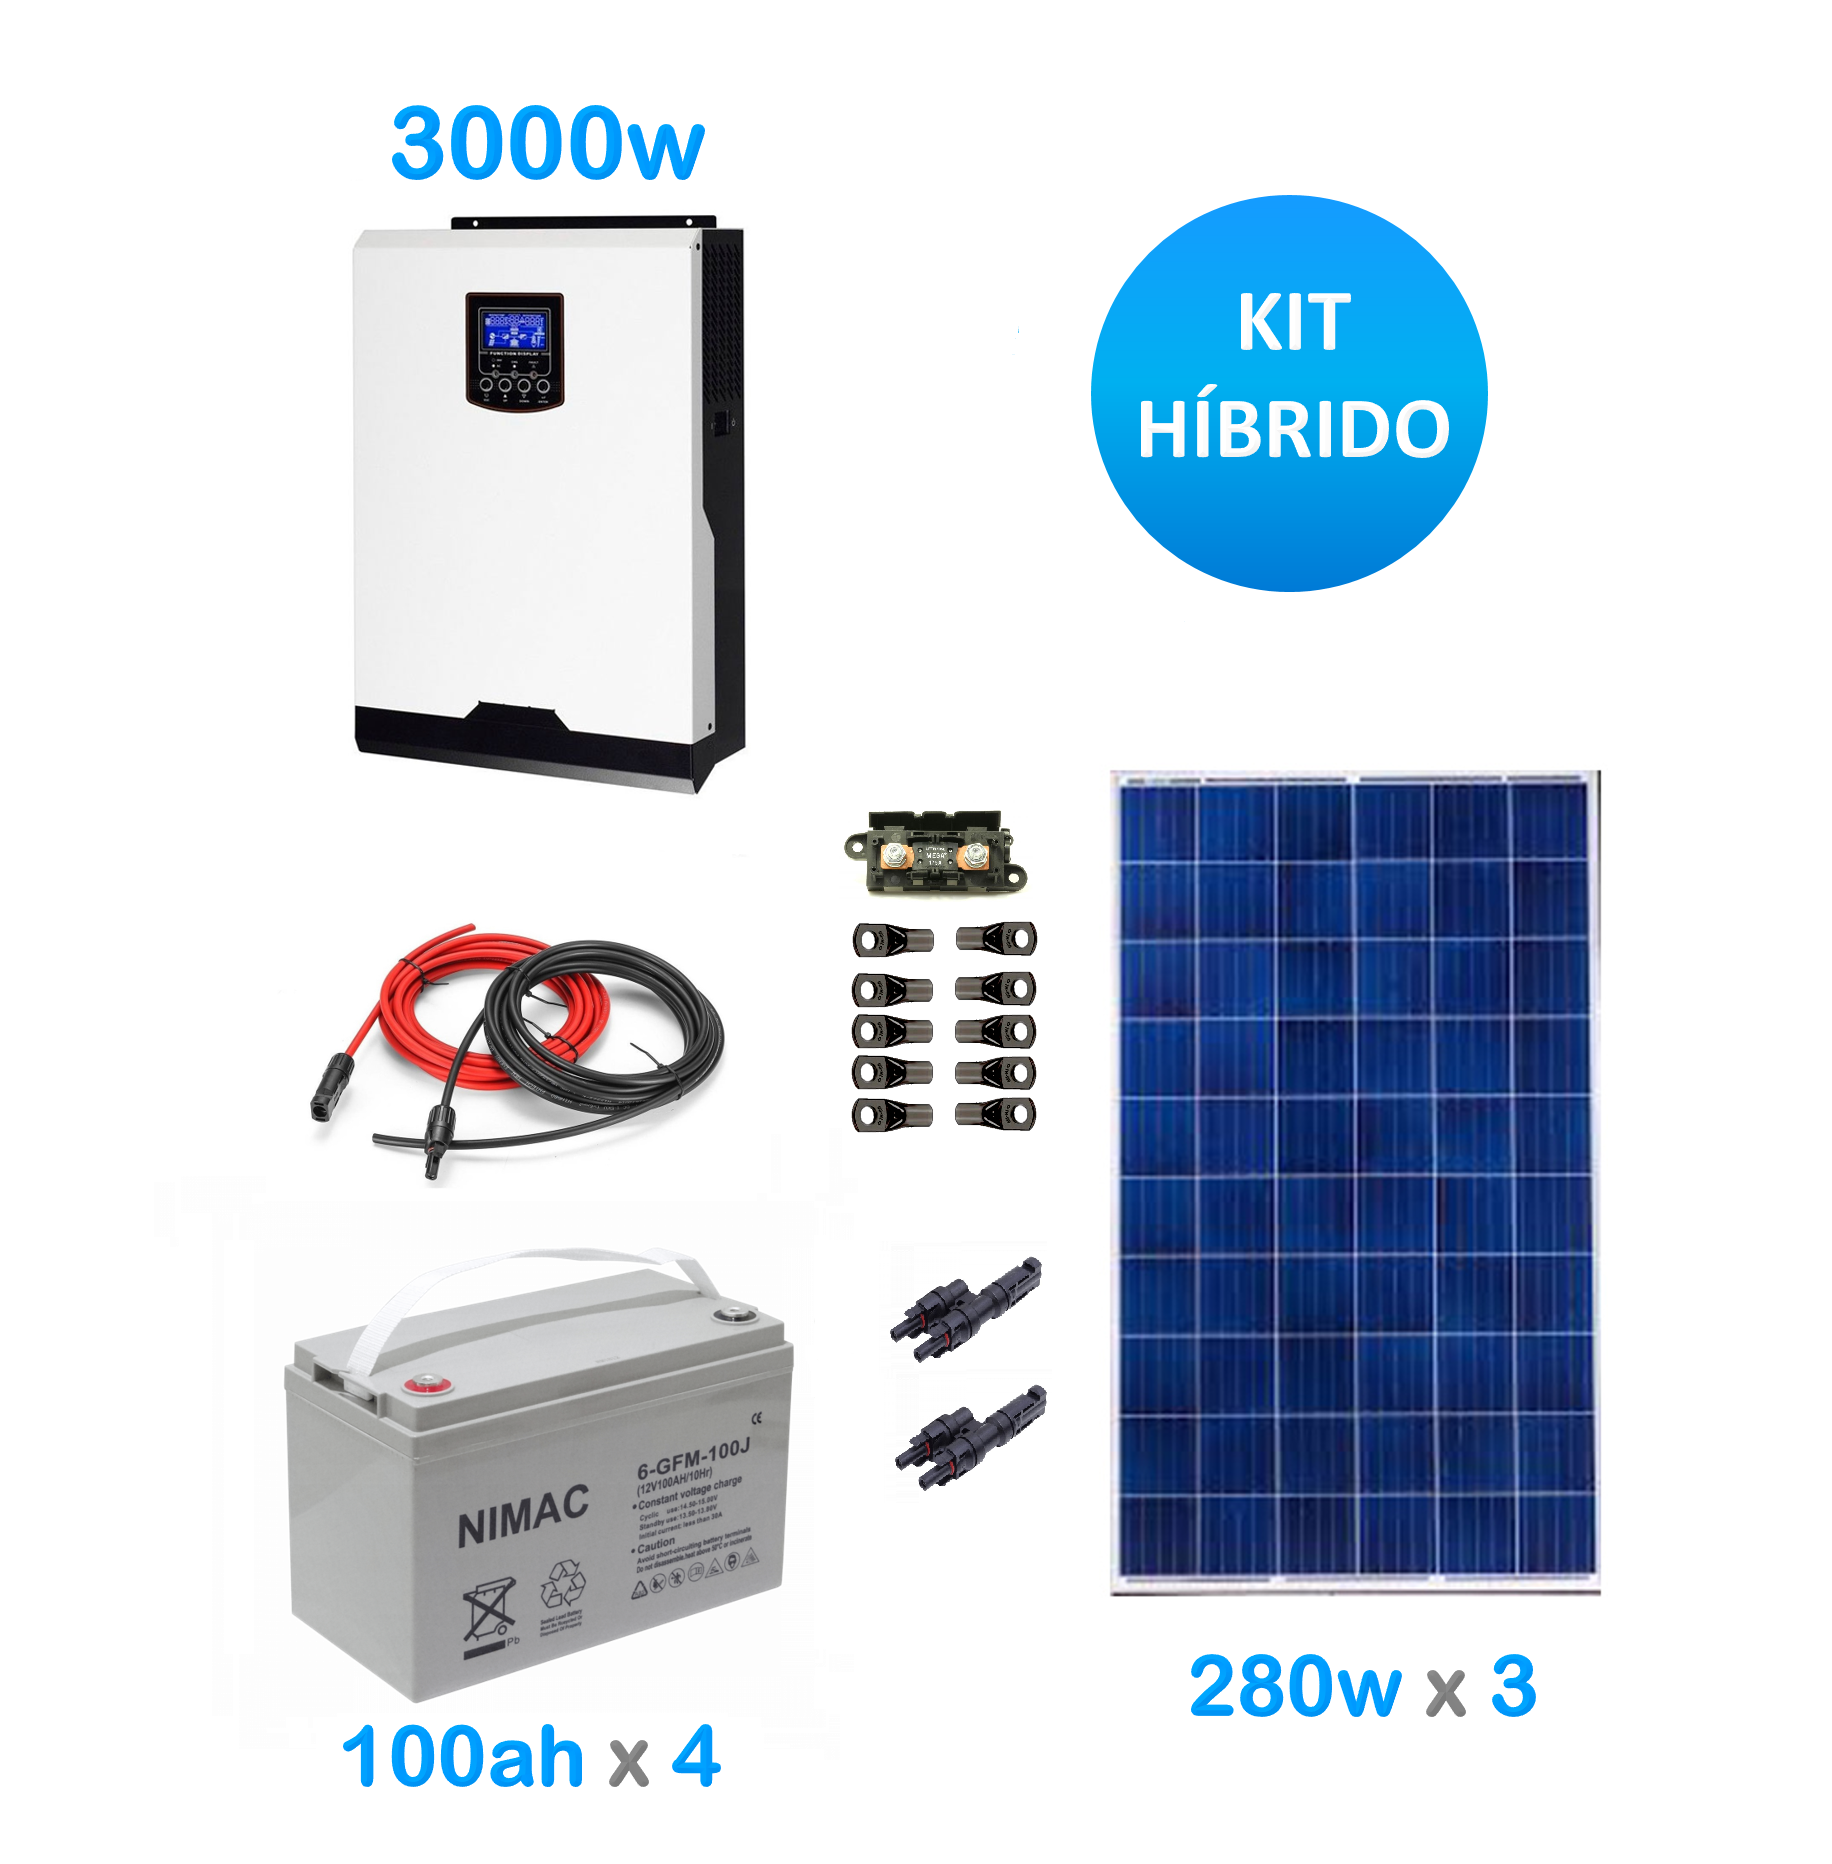 Placas solares con baterías o sin baterías?